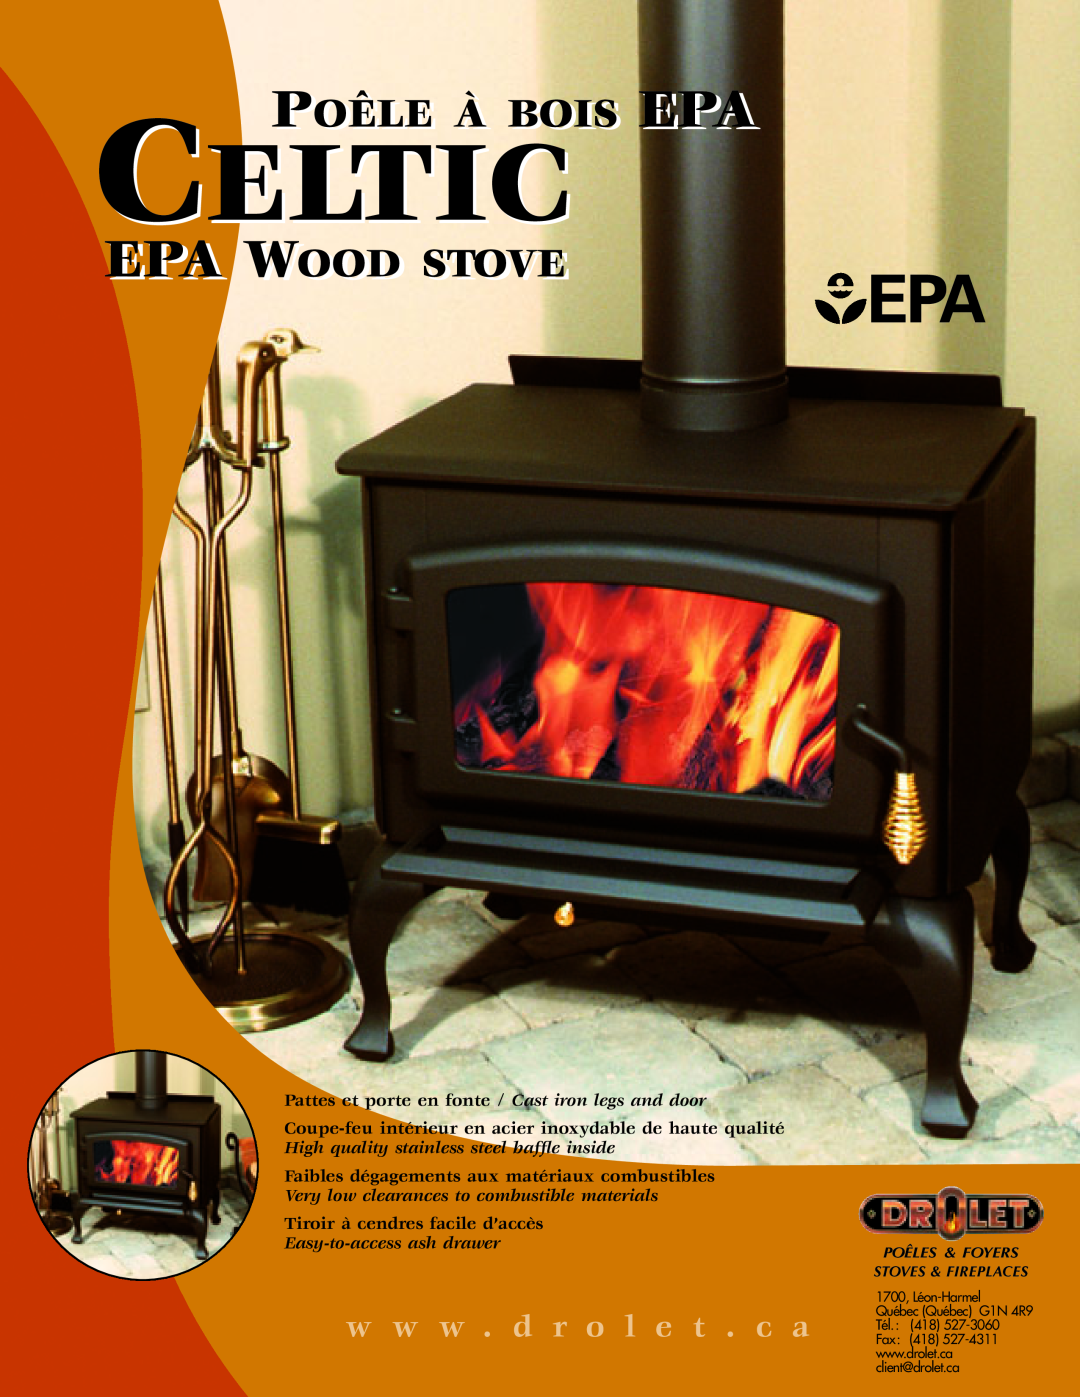 Drolet DB03010 manual Celtic, Poêle À Bois Epa, Epa Wood Stove, w w w . d r o l e t . c a, Tiroir à cendres facile d’accès 